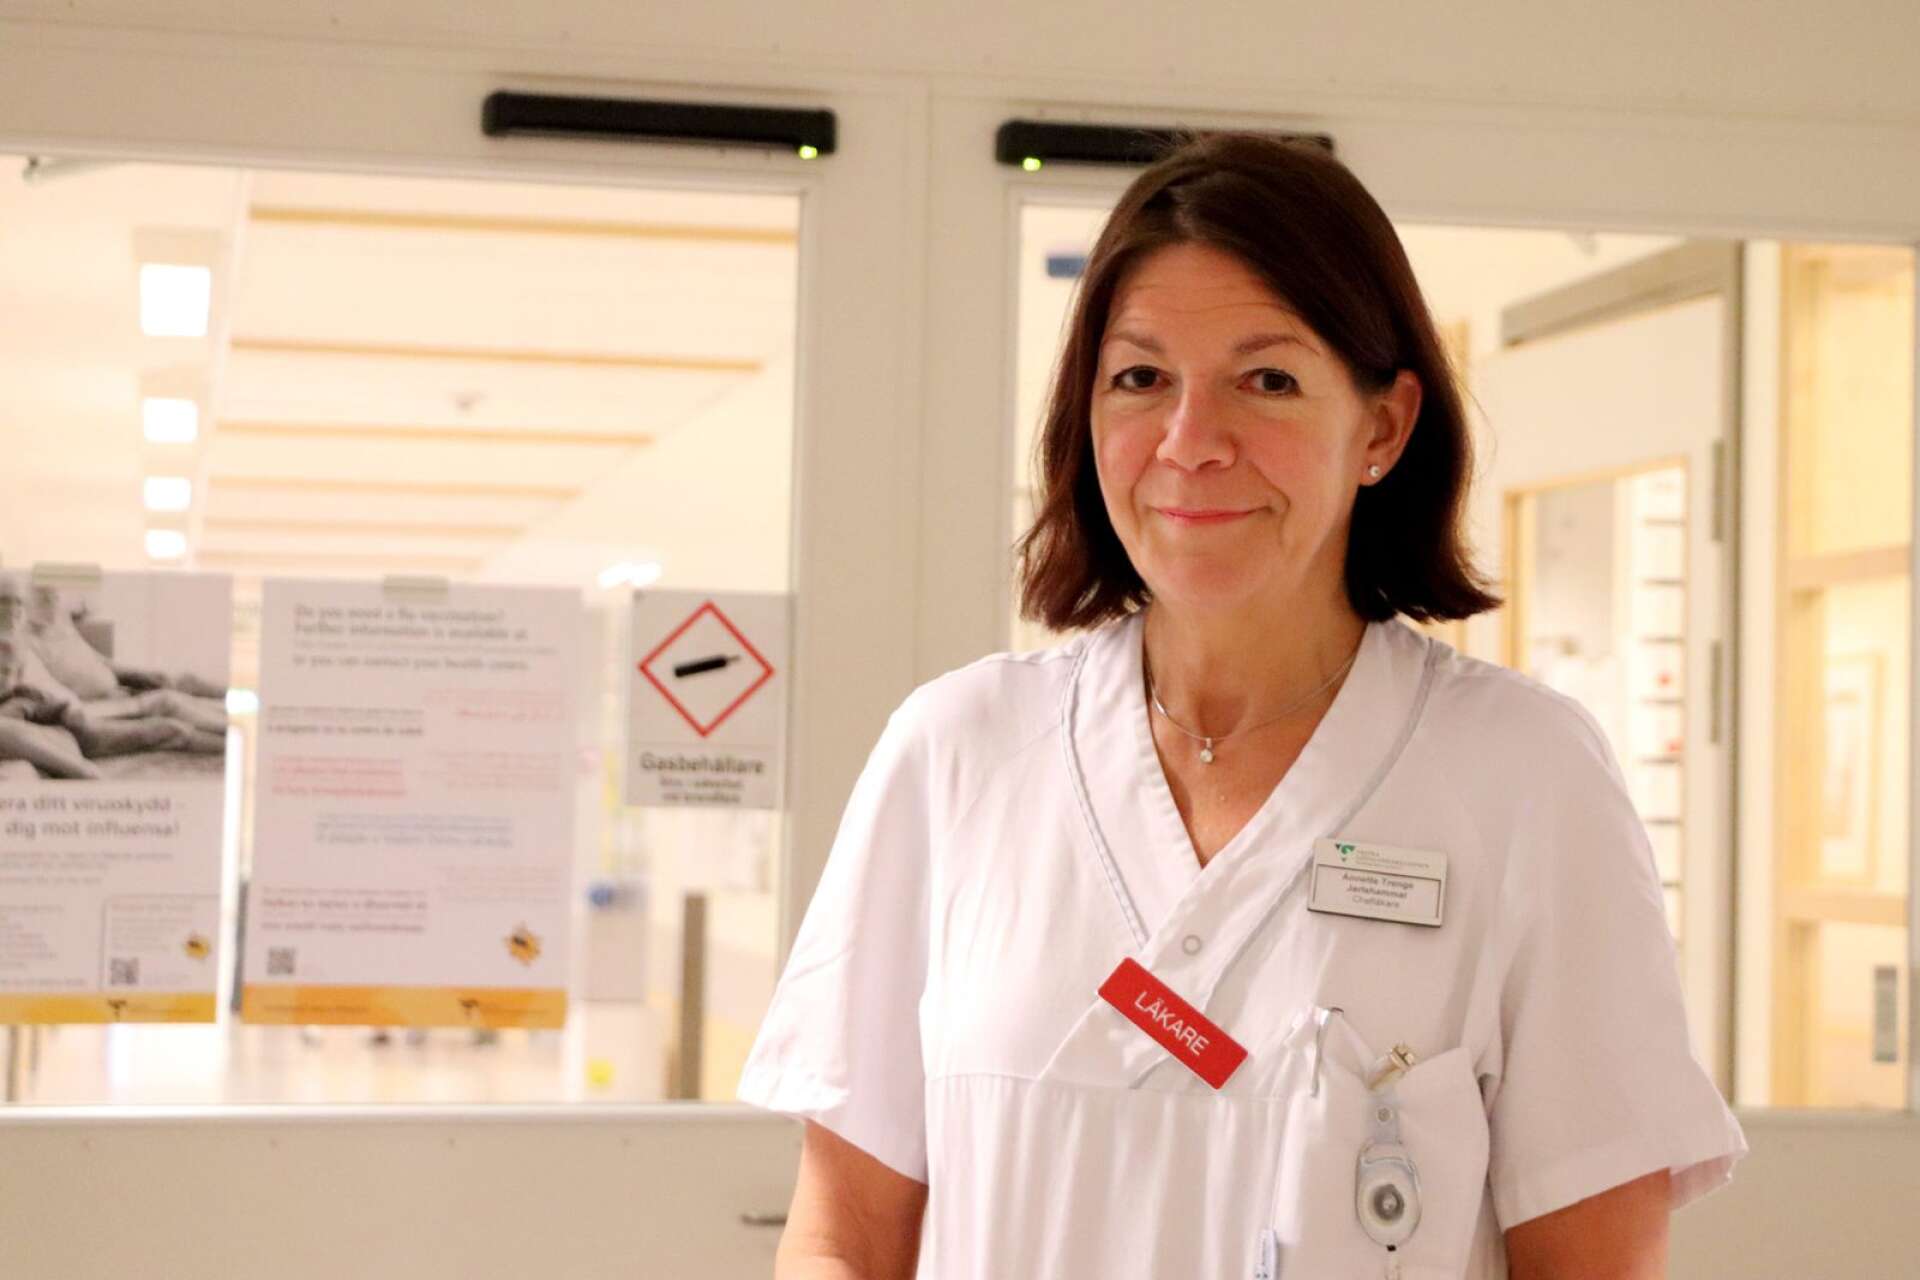 Annette Trenge Jarlshammar är chefläkare på Skaraborgs sjukhus och svarar om förändringen som sker den 20 september. 